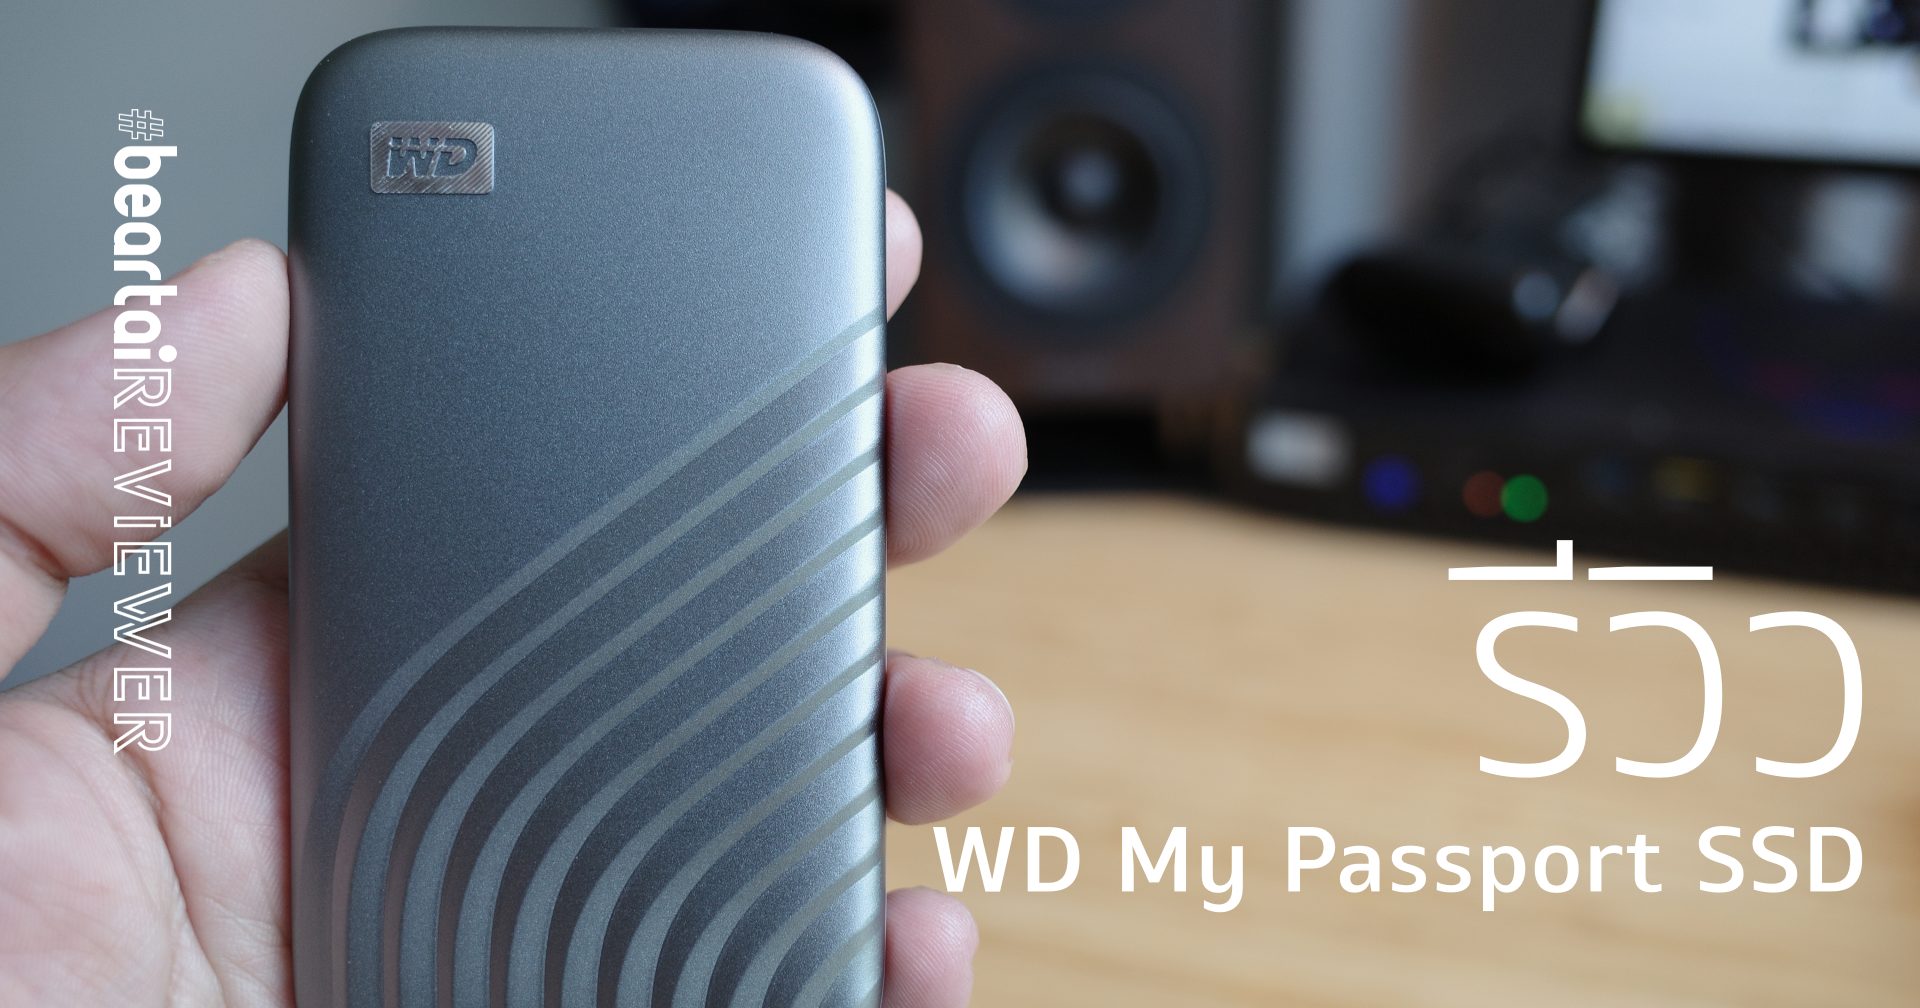 รีวิว WD My Passport SSD รุ่นปี 2020 ไดรฟ์พกพาสุดแรงระดับ GB/s!